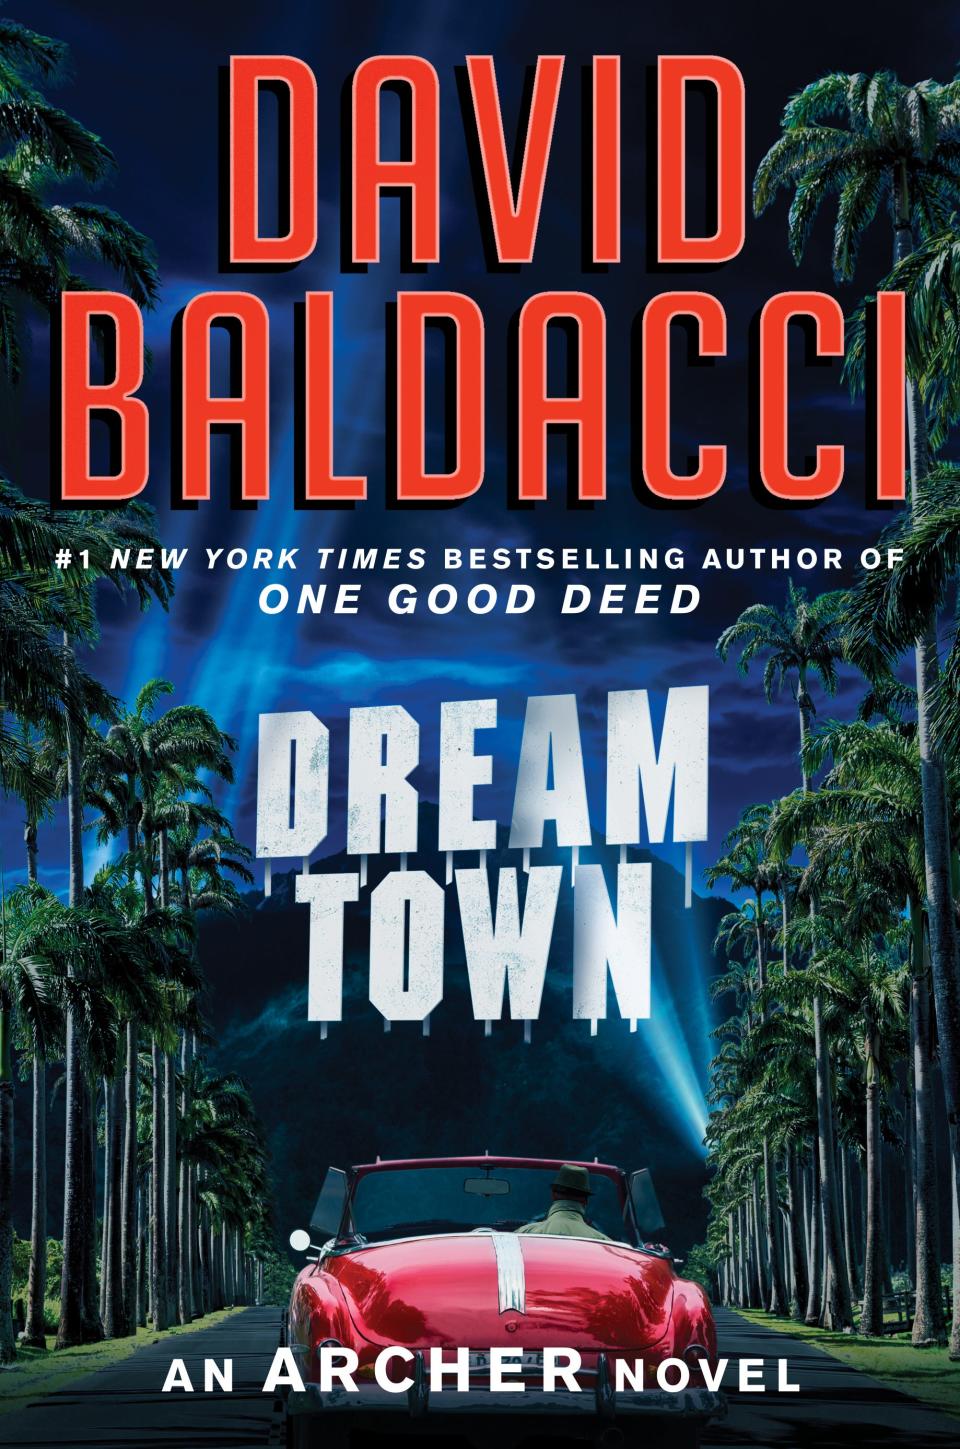 "Dream Town" by David Baldacci